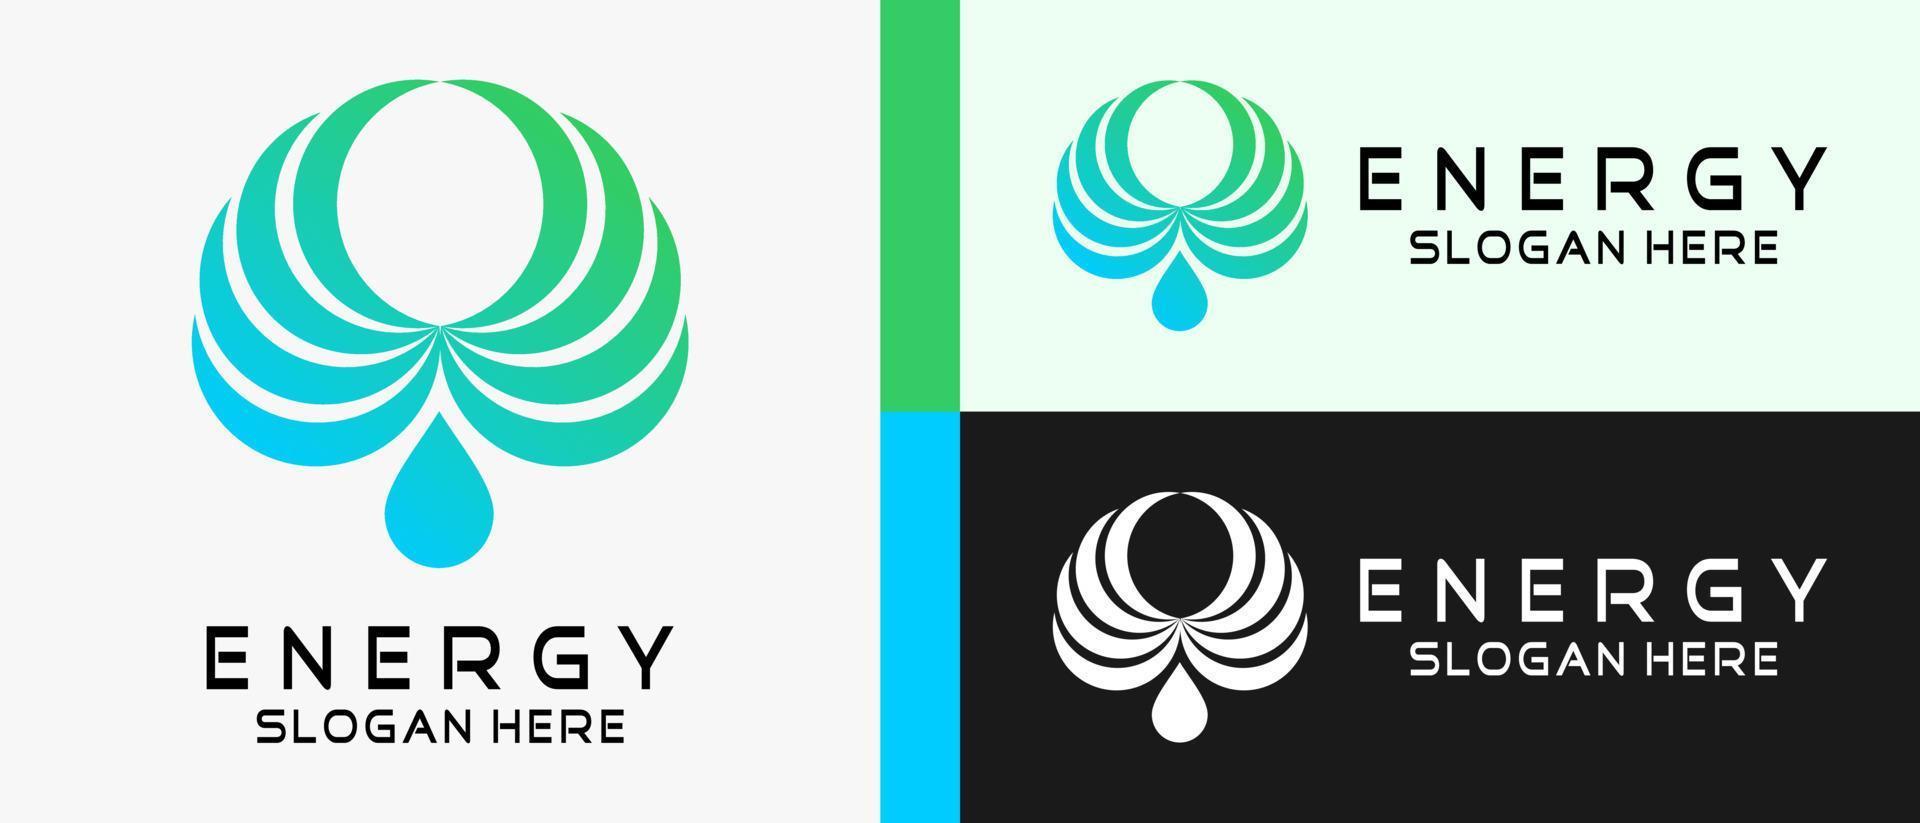 Energie-Logo-Design-Vorlage mit Flügeln und Wassertropfen-Elementkonzept. Premium-Vektor-Logo-Illustration vektor